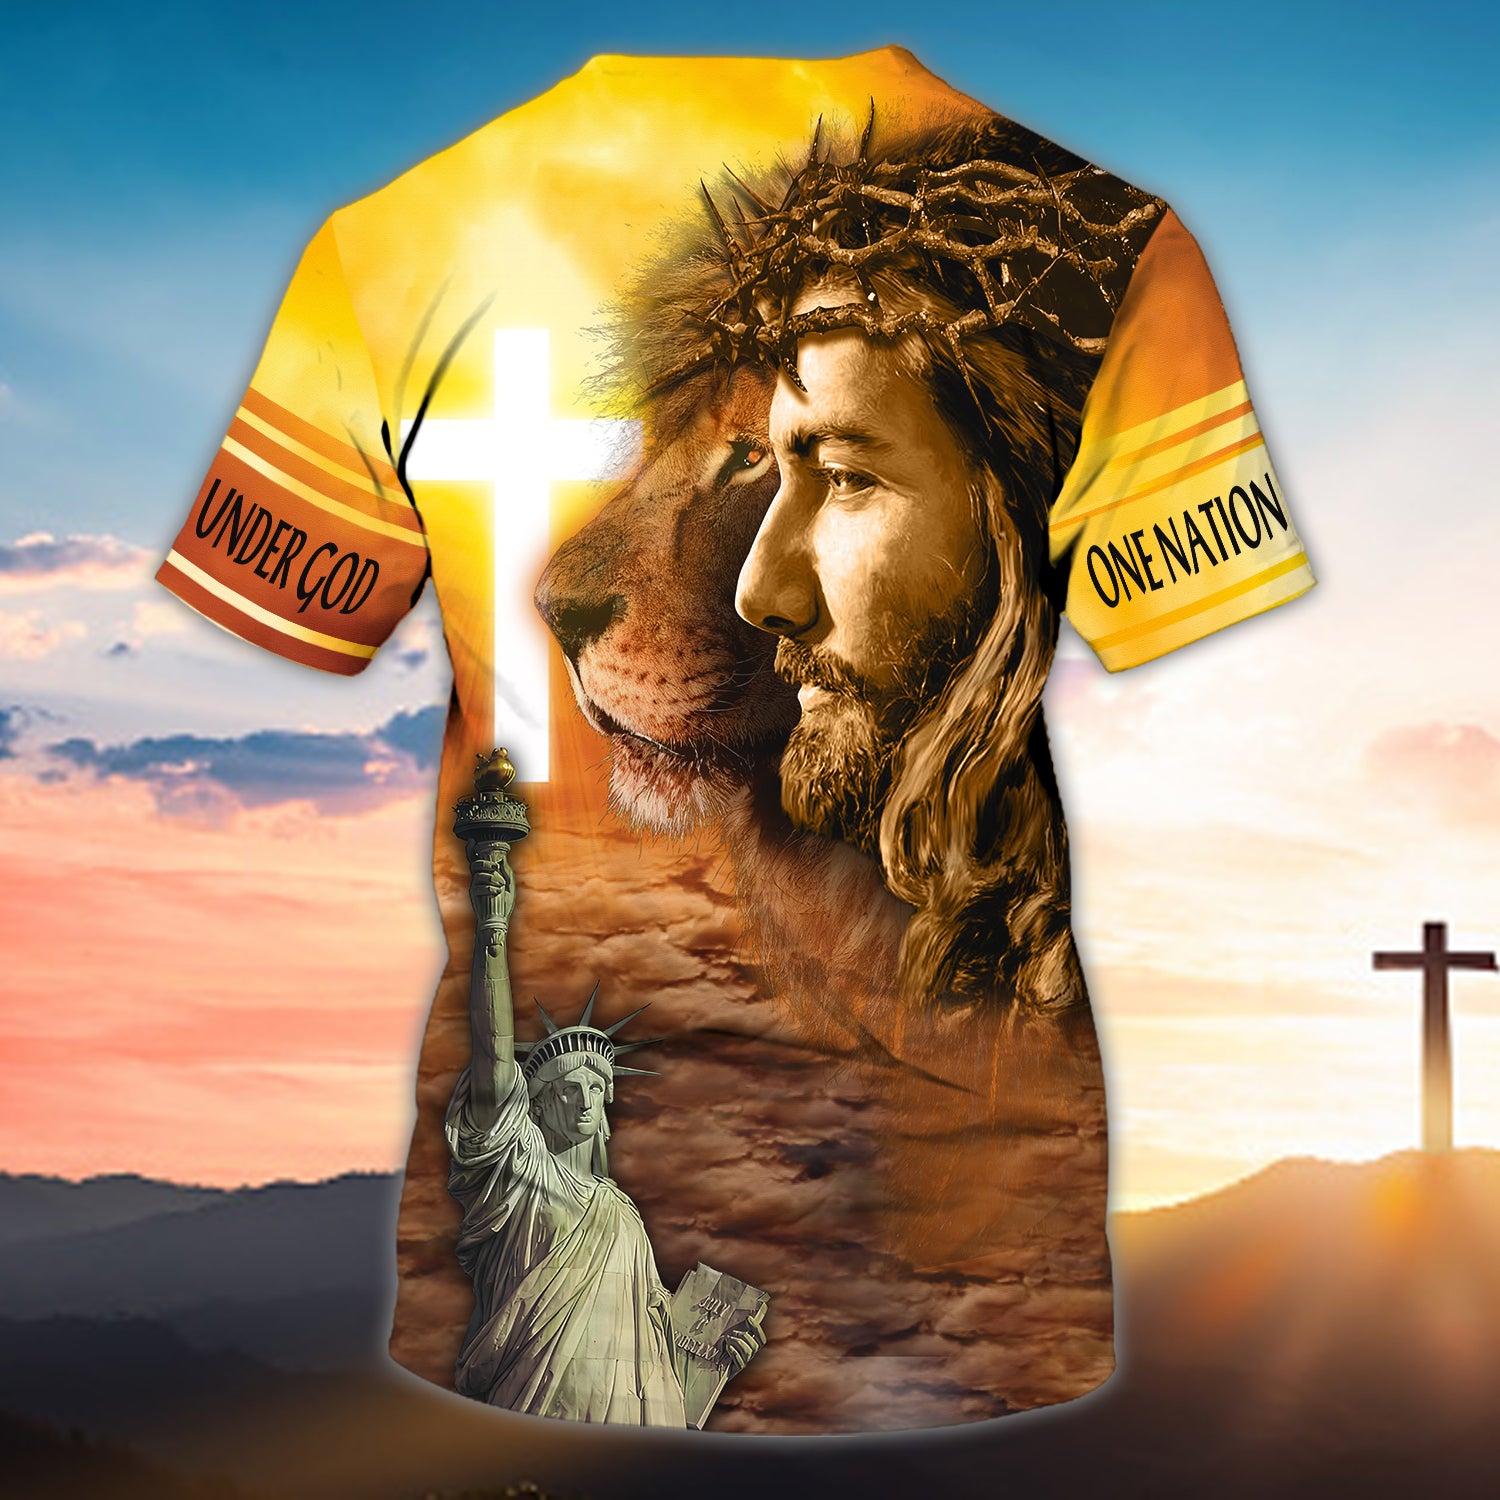 Customized Tshirt-One nation under god-HTV